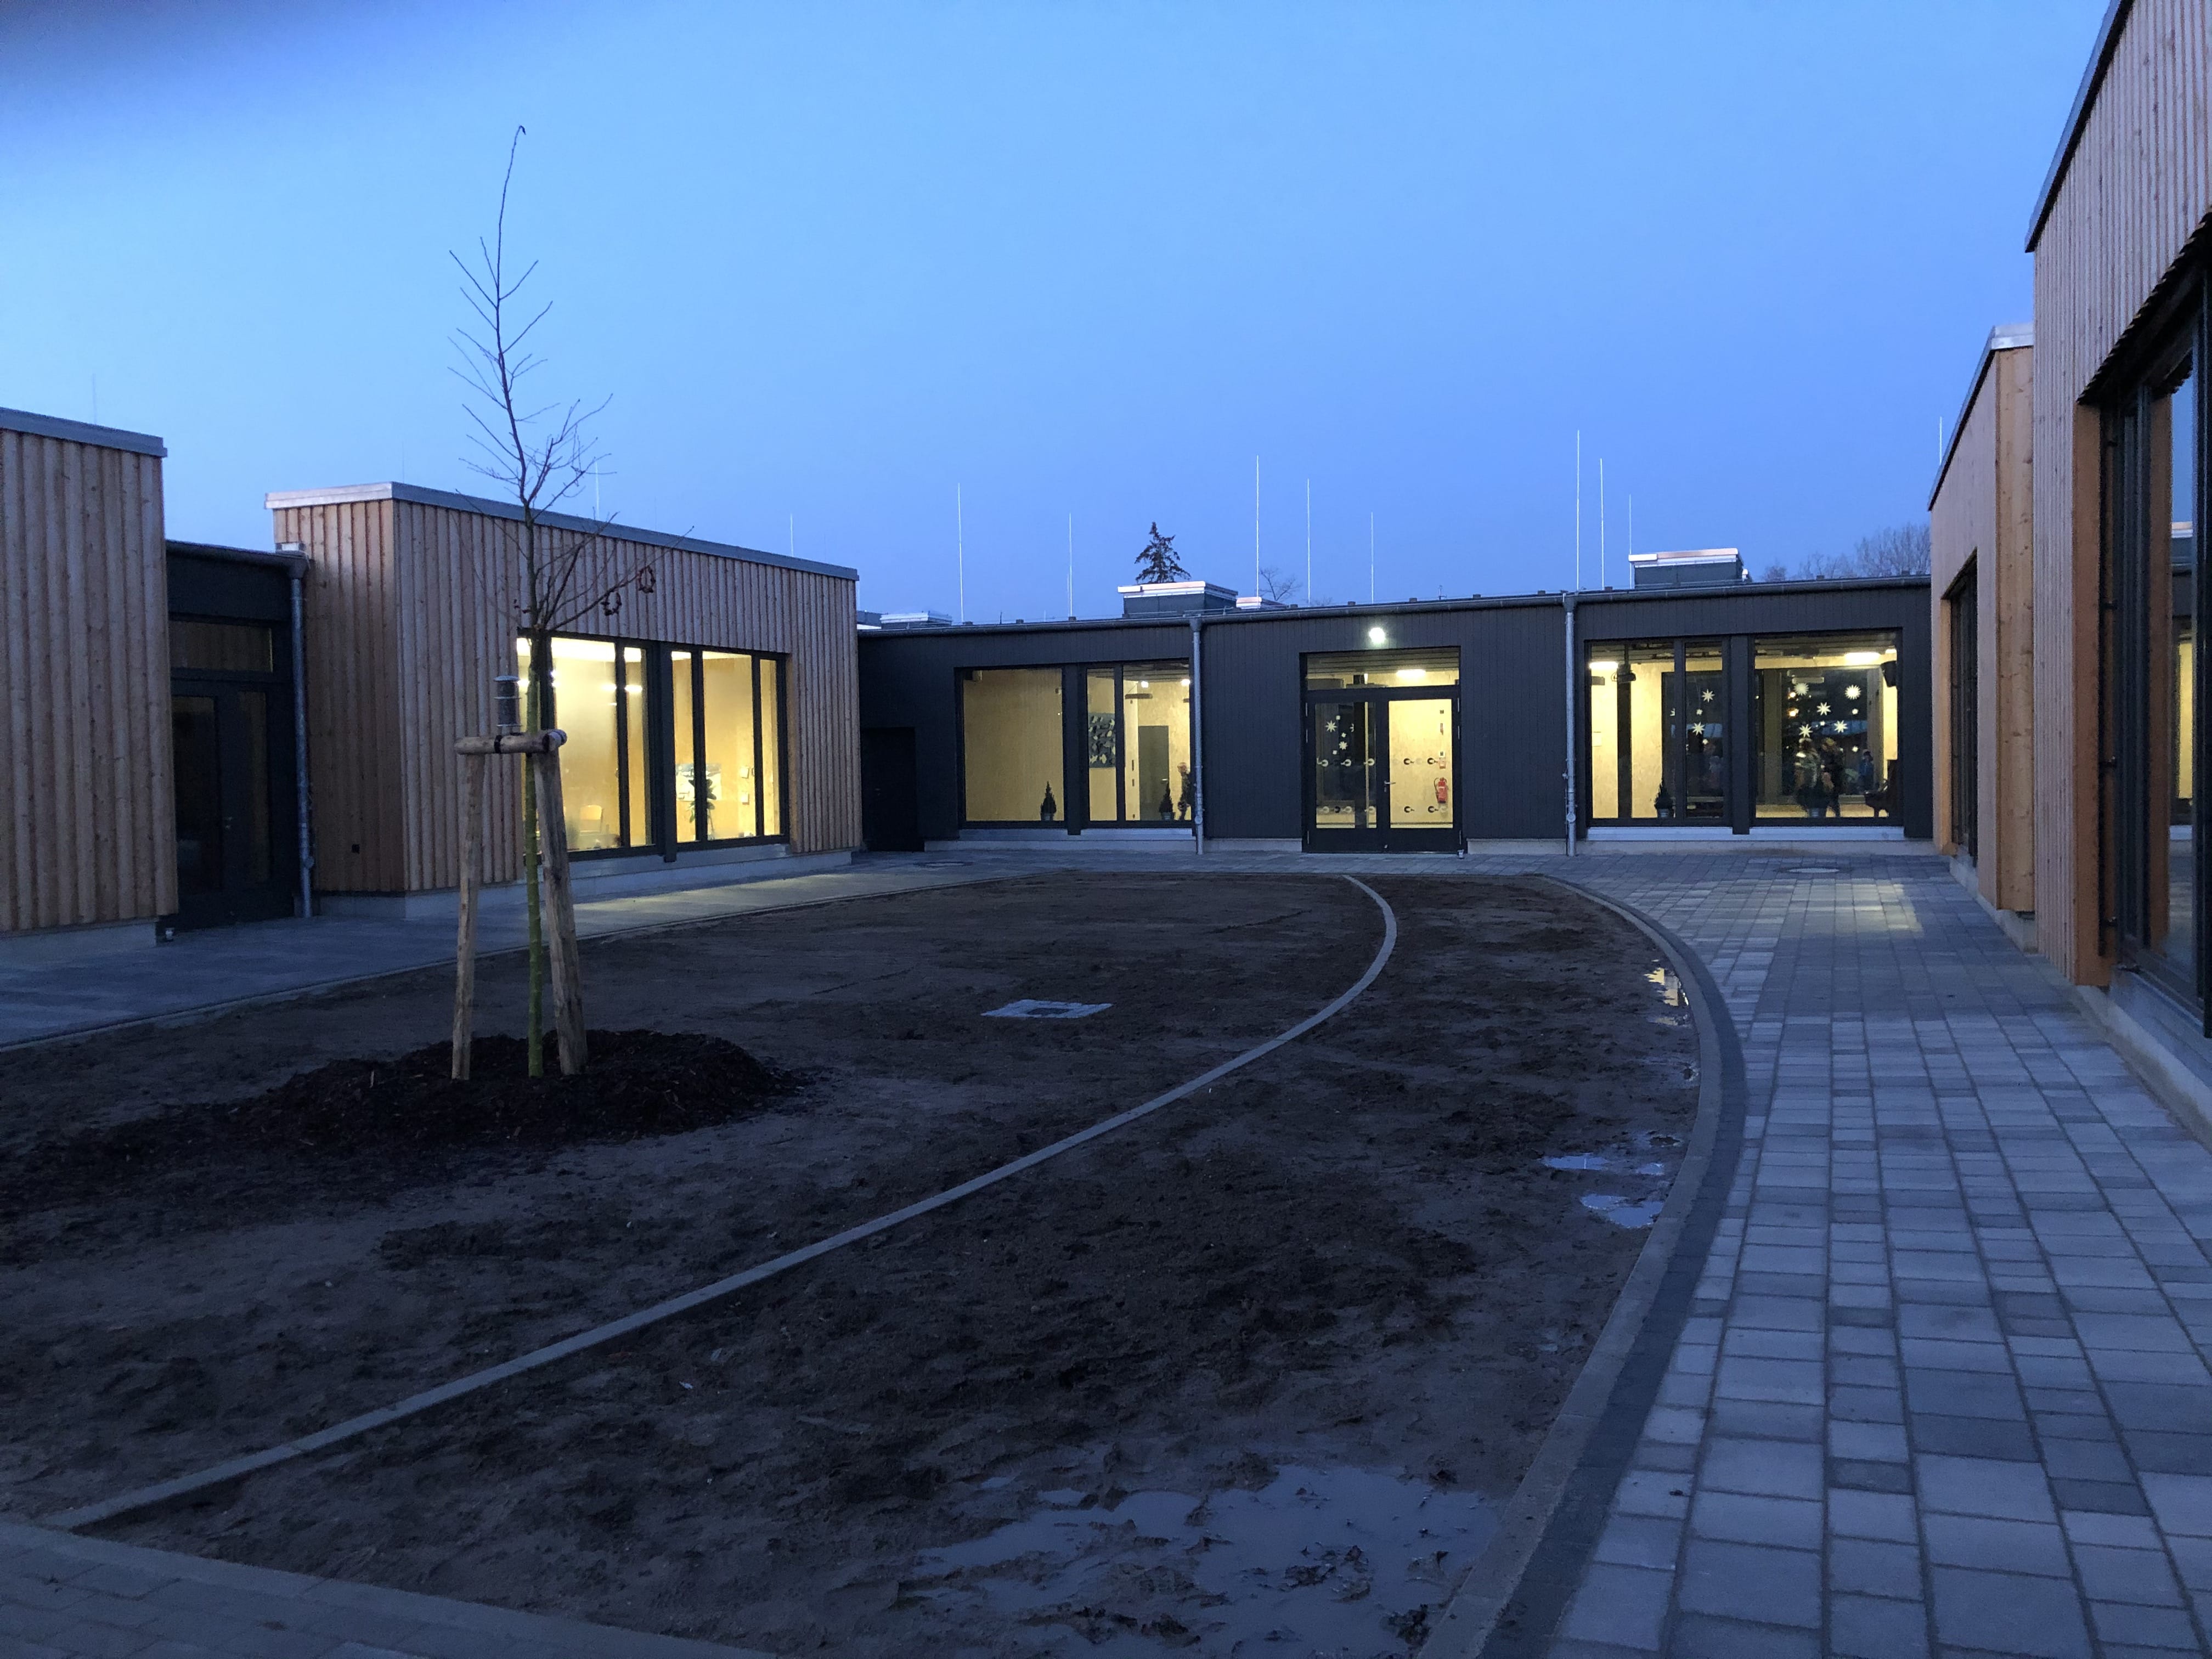 Projekt in Wismar, gebaut wurde eine Schule als Neubau, Bauvorhaben vom 01.11.2019 